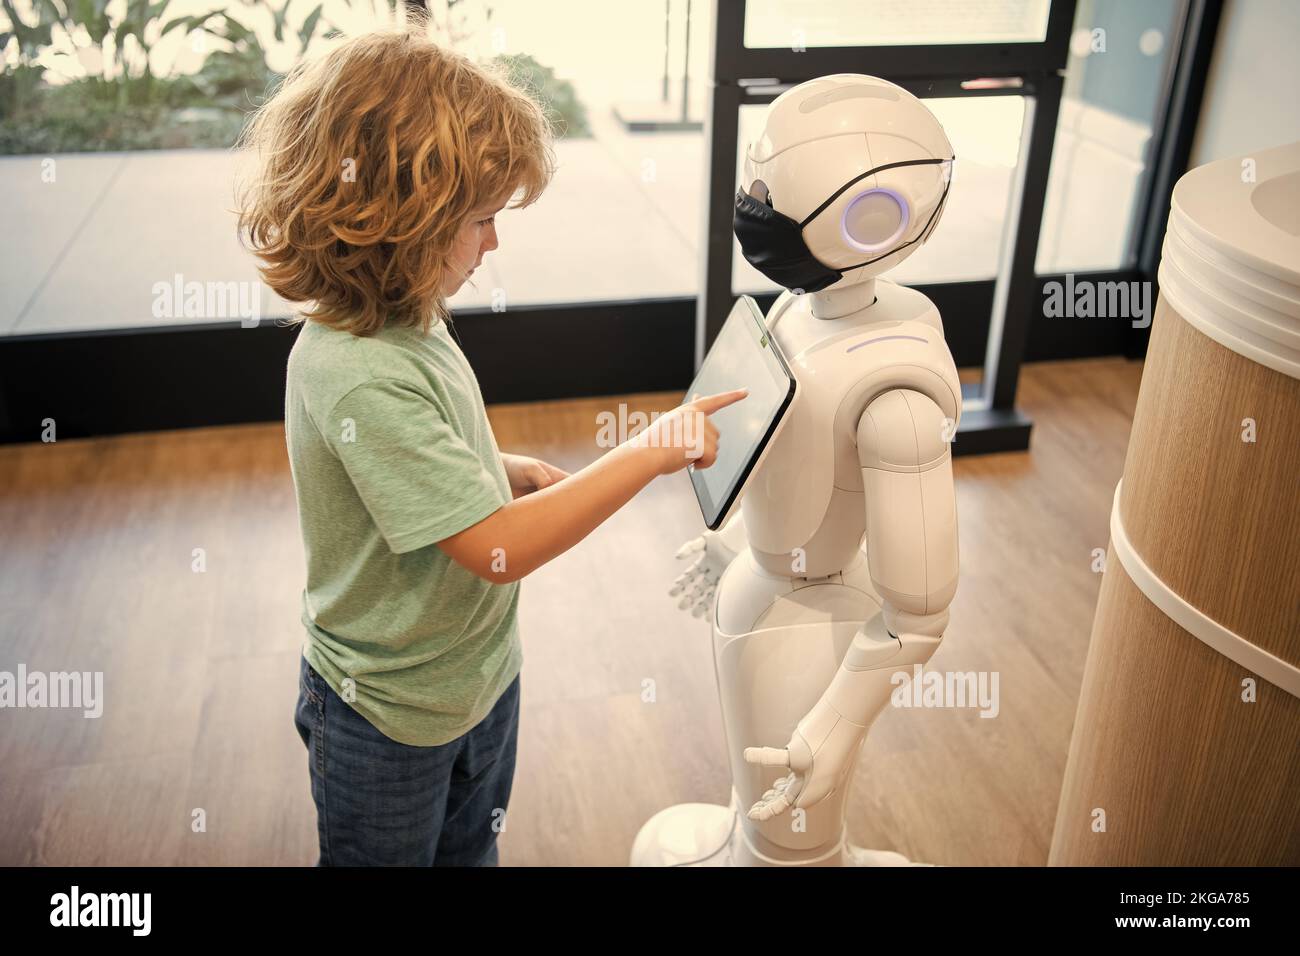 curieux enfant interagir avec robot intelligence artificielle, communication Banque D'Images